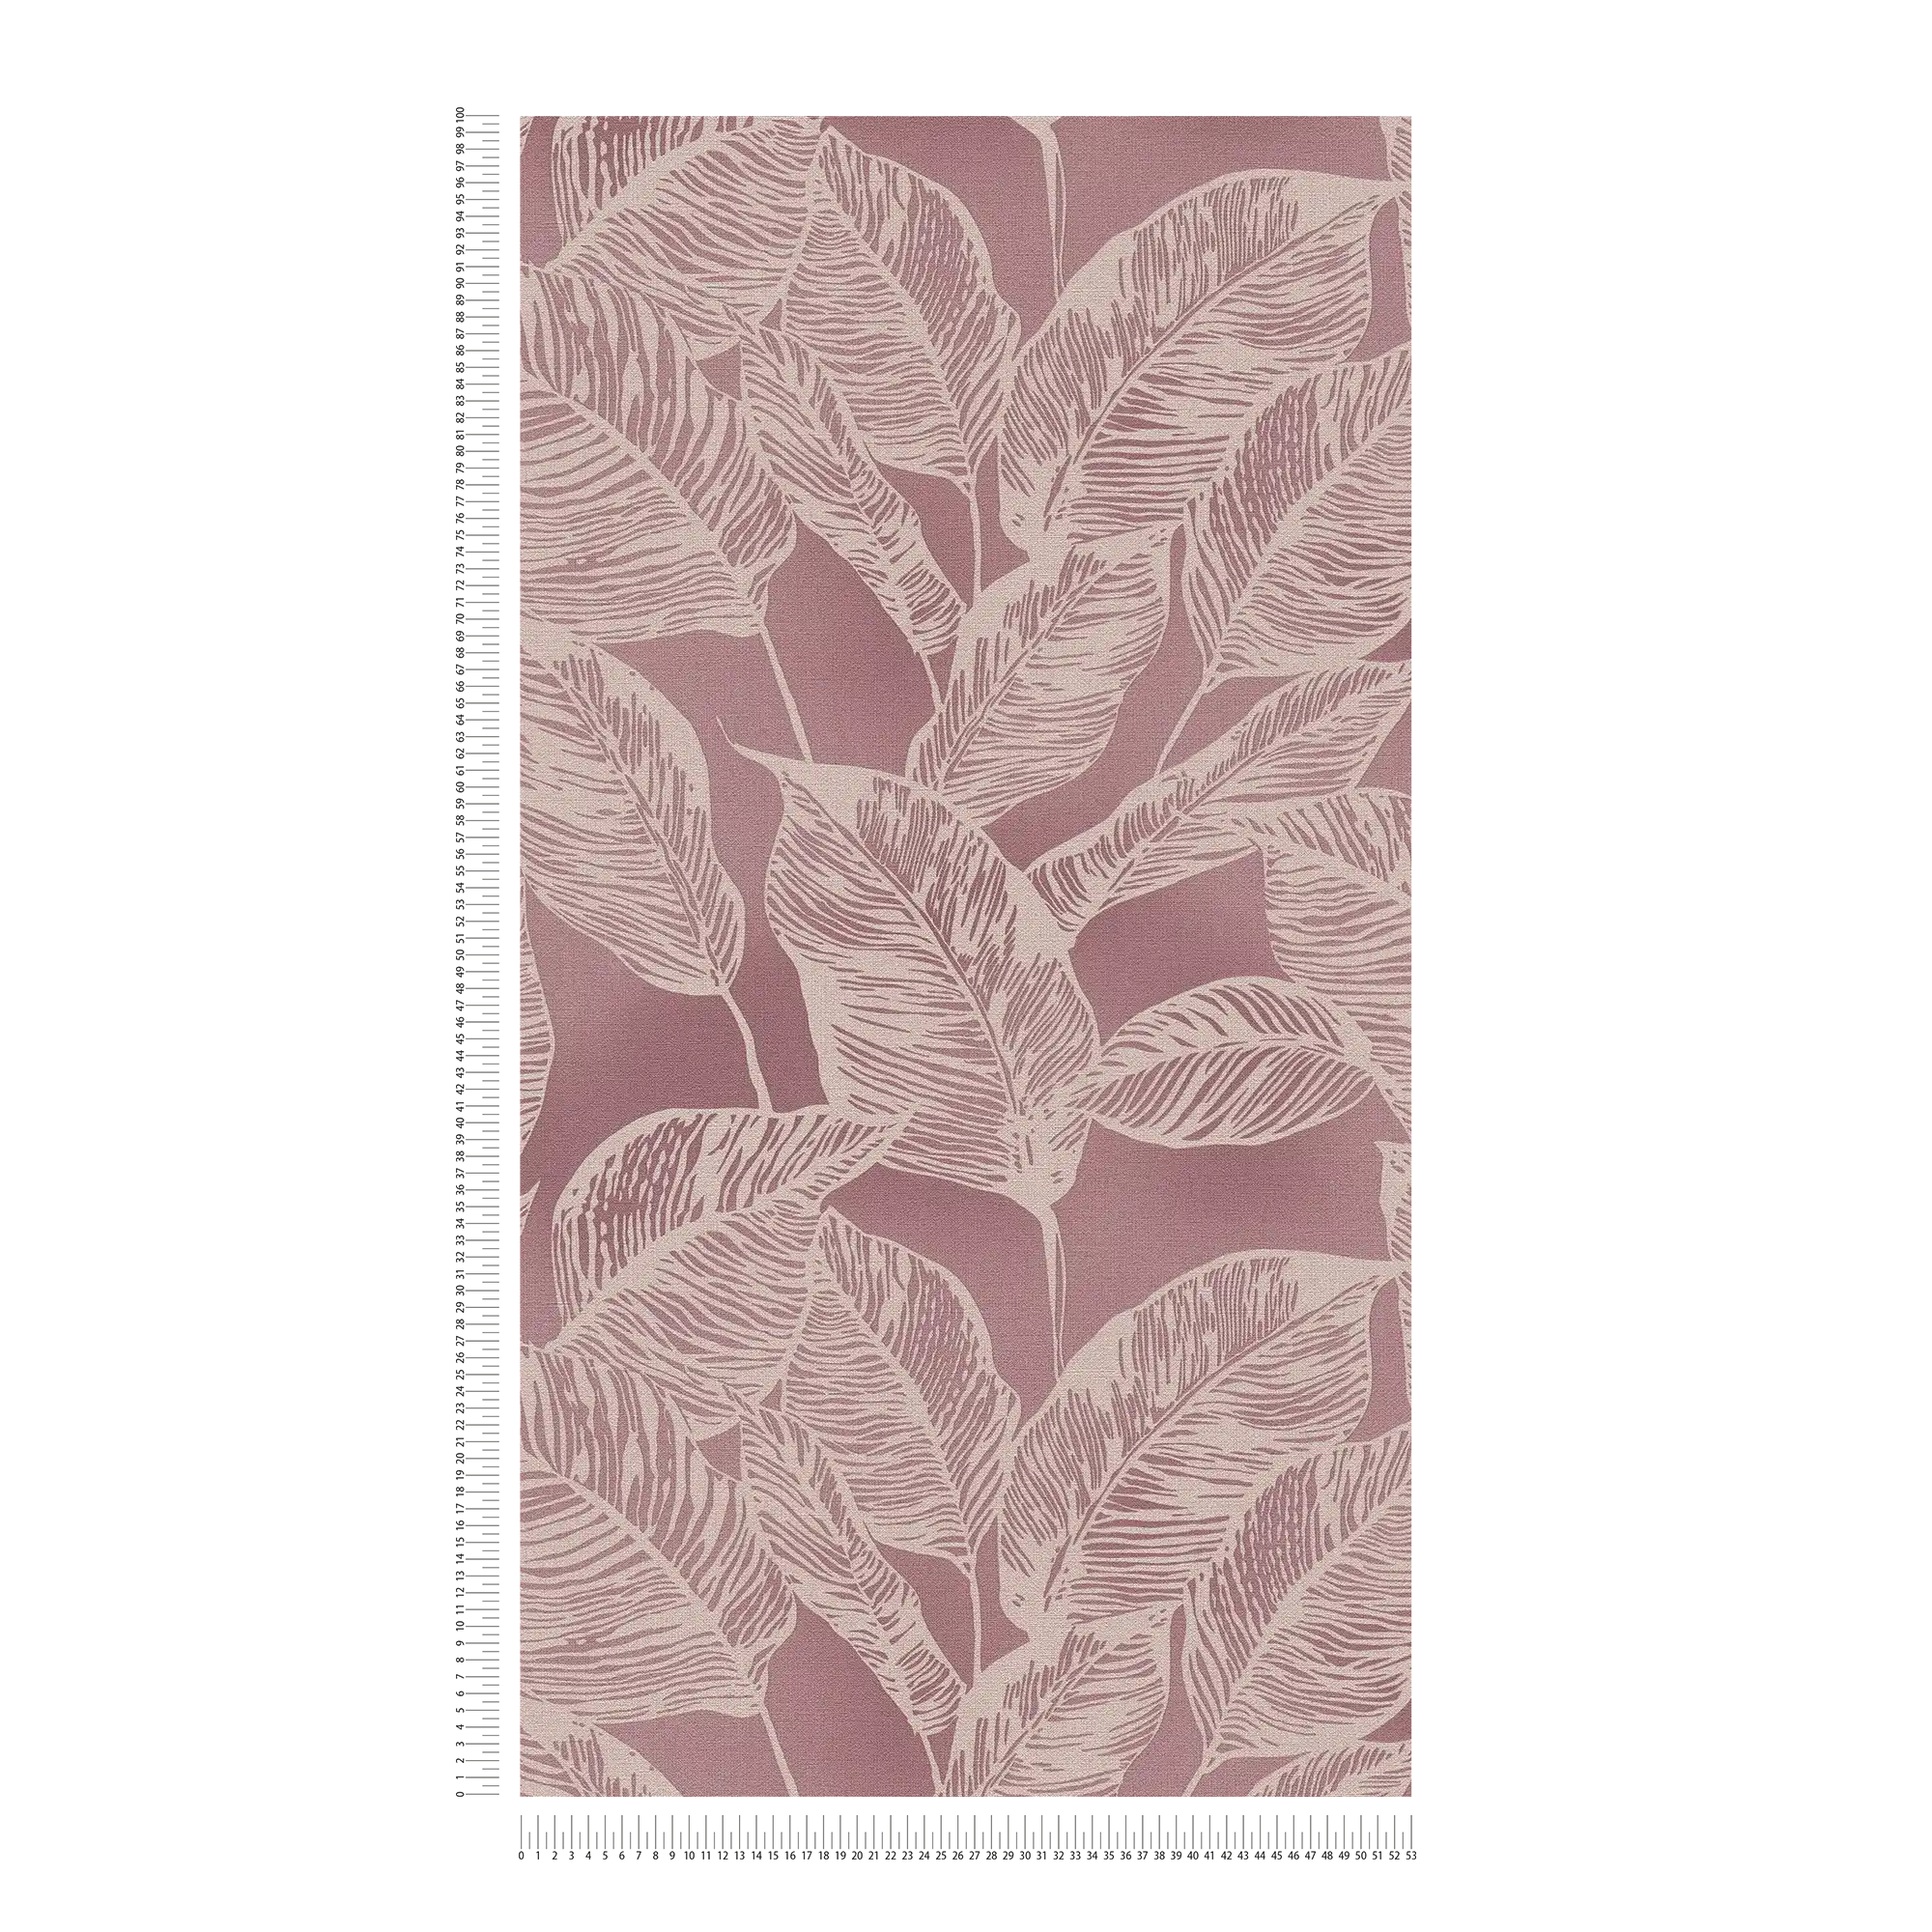             Papel pintado tejido-no tejido sin PVC con motivo de hojas - rosa, crema
        